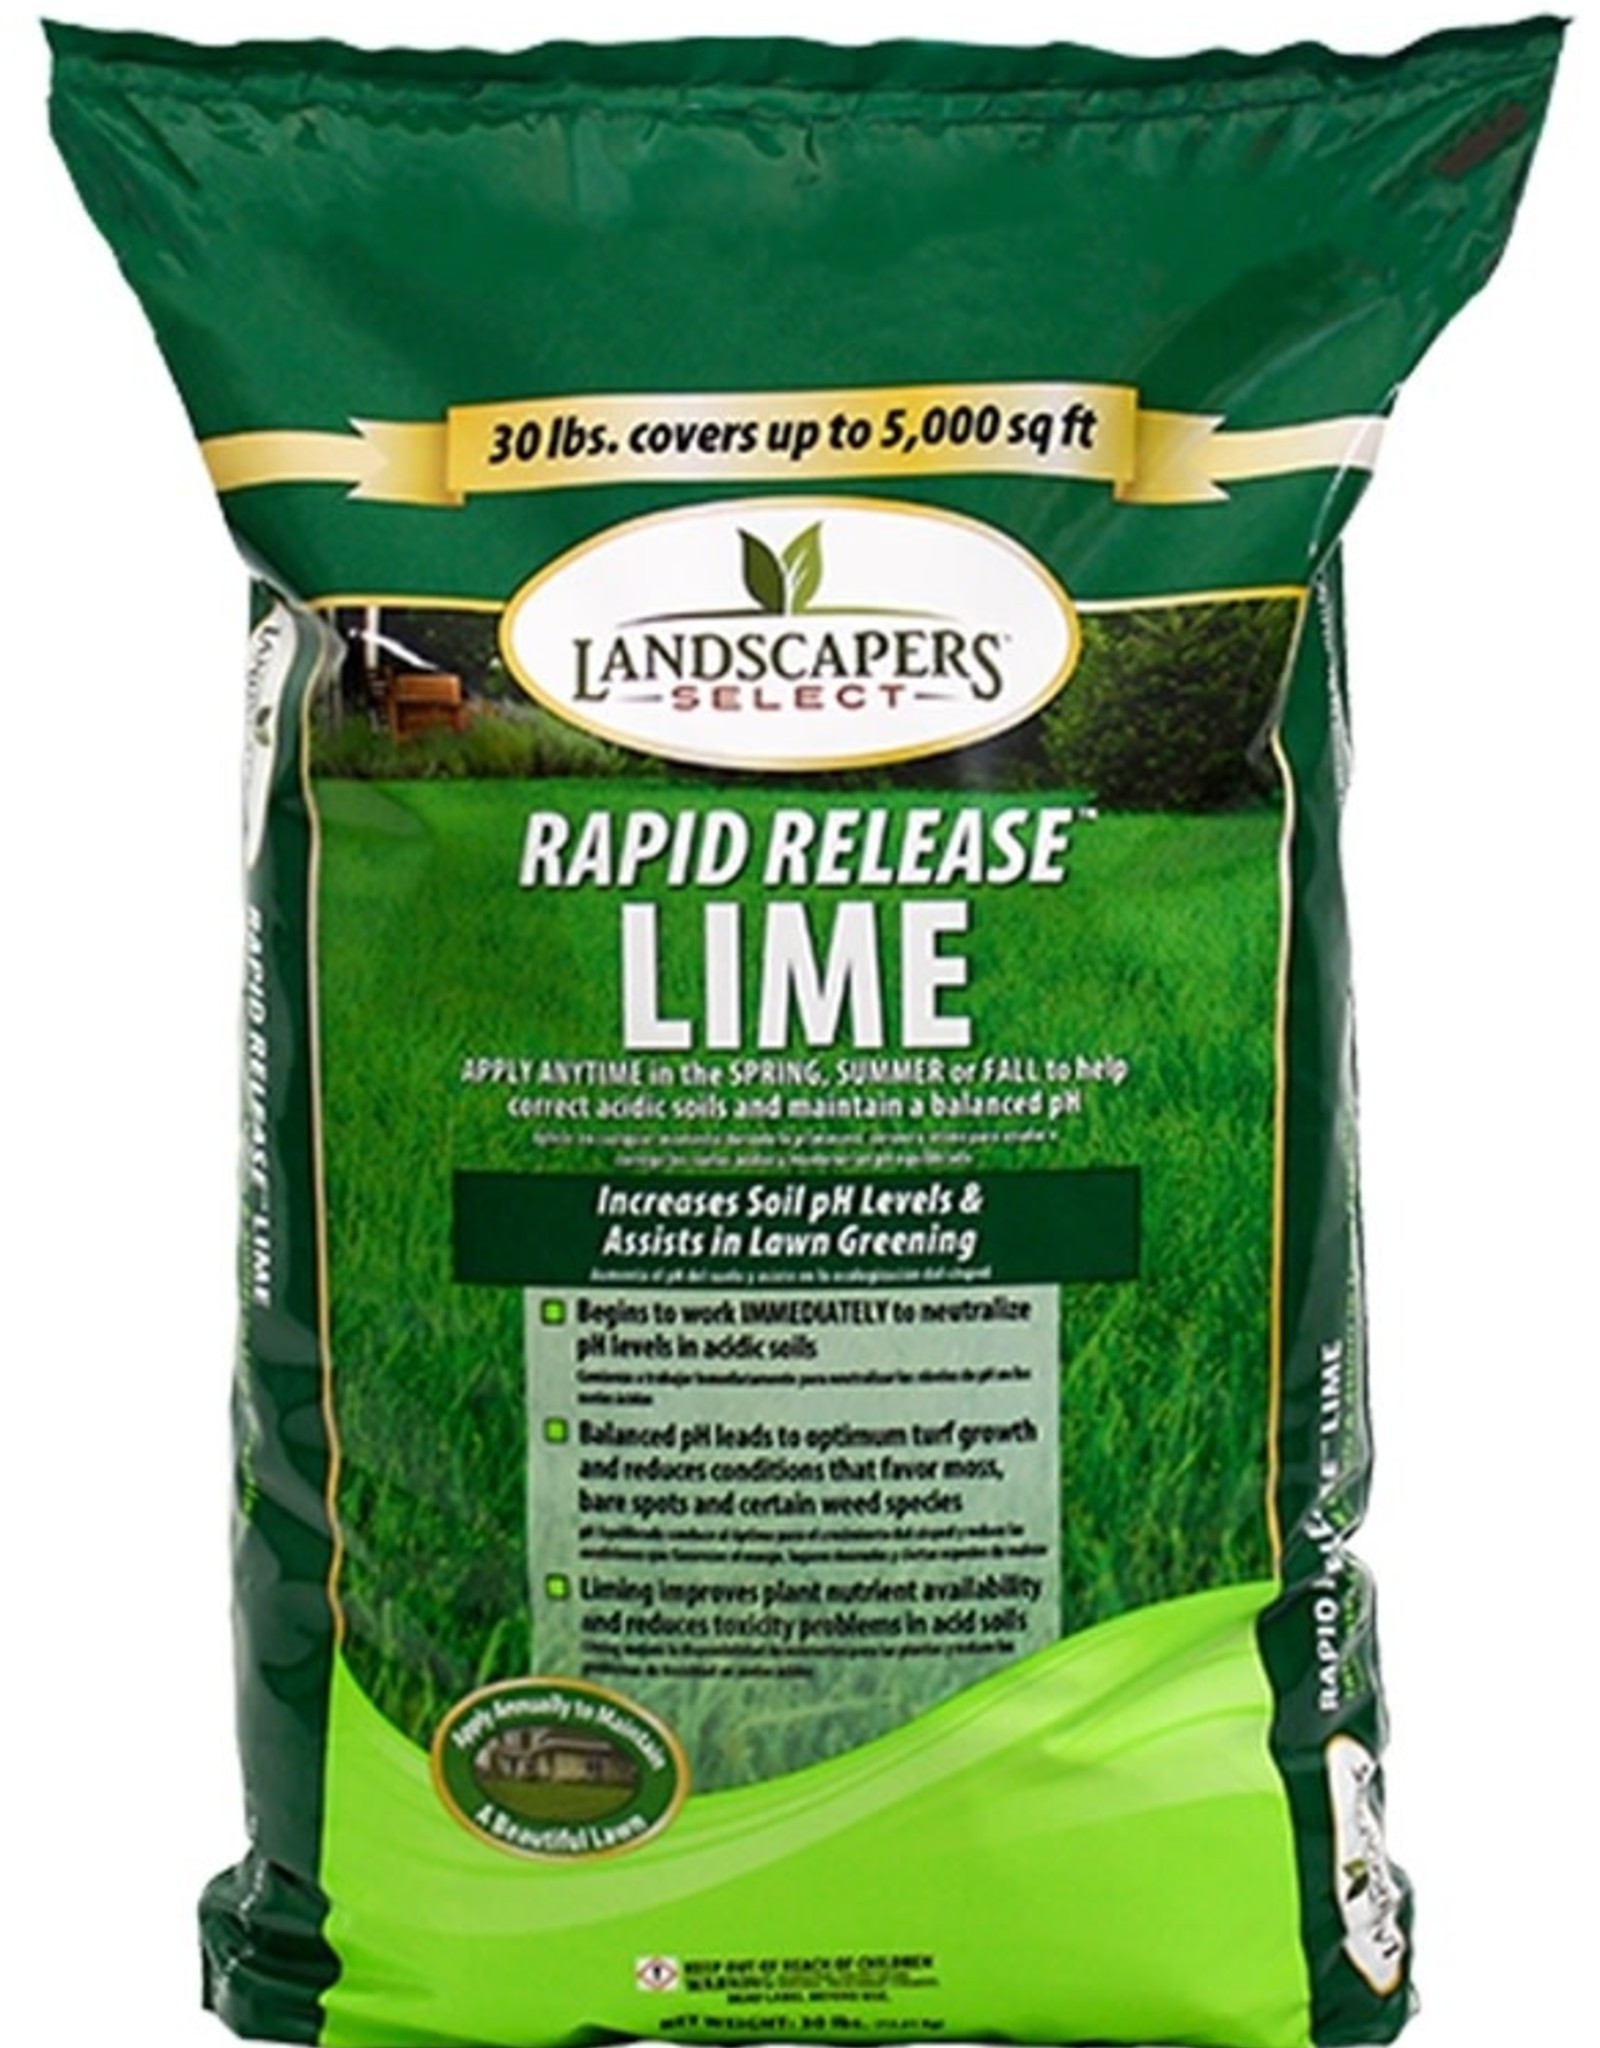 Landscaper's Select Landscaper's Select Rapid Release Lime  30lb